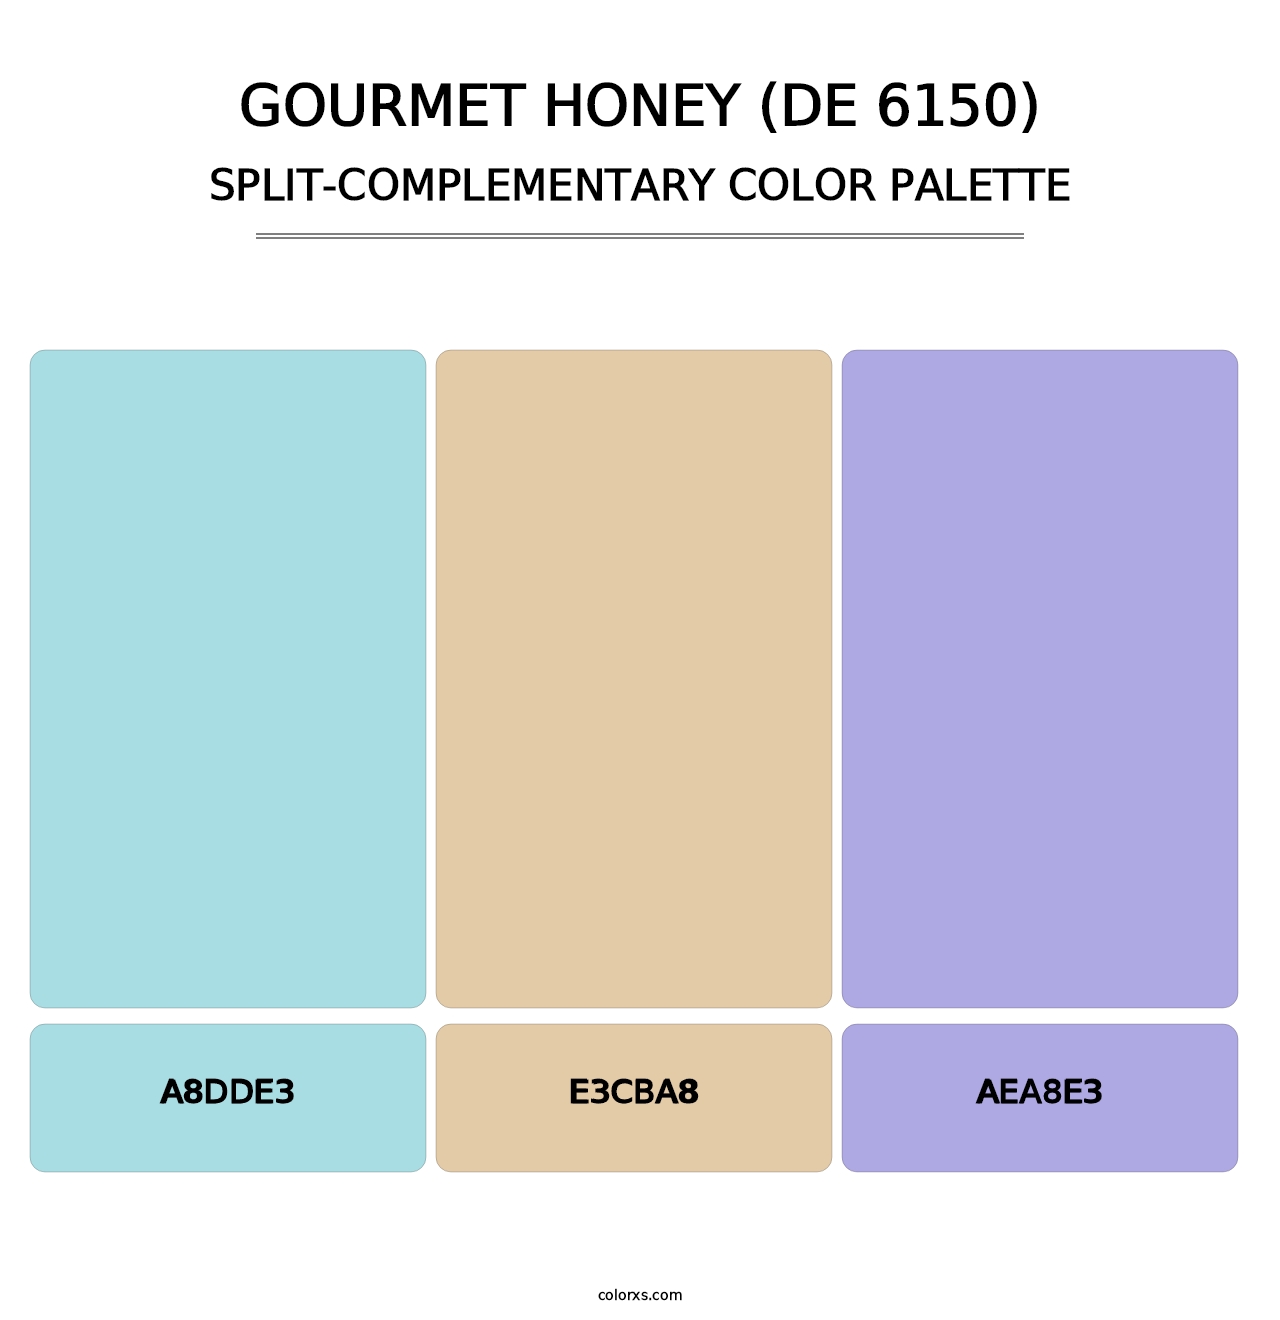 Gourmet Honey (DE 6150) - Split-Complementary Color Palette